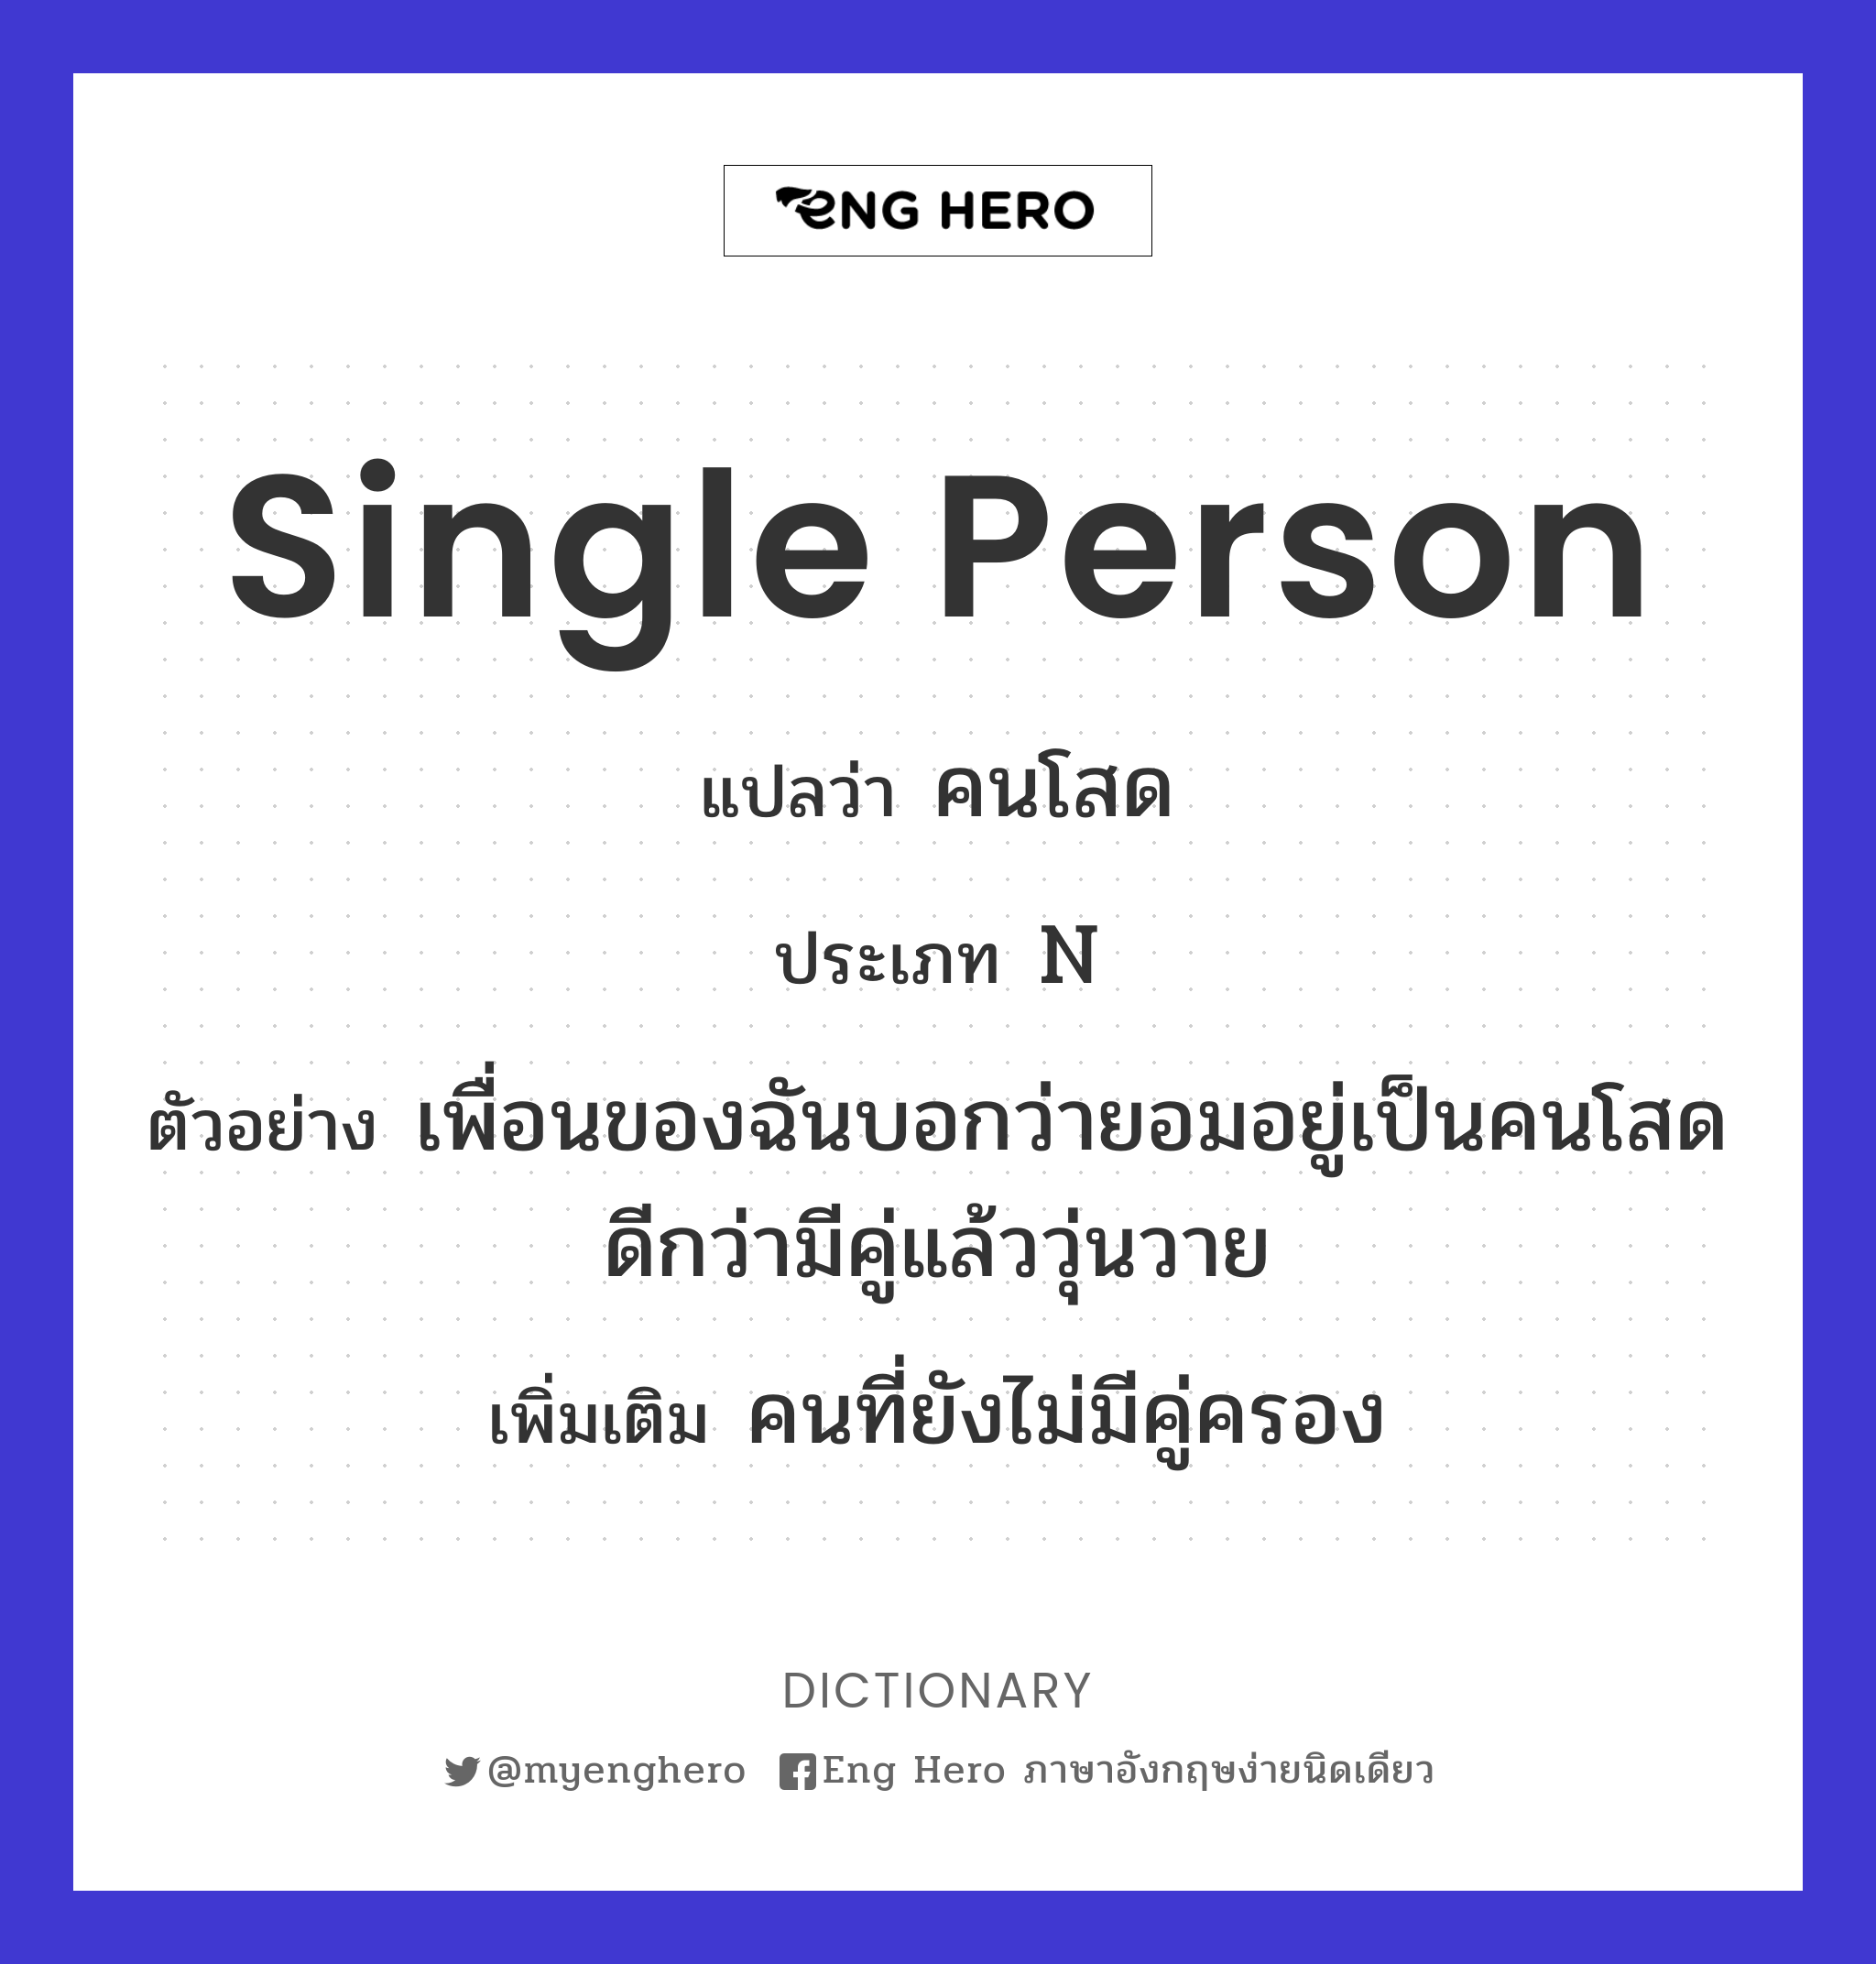 single person